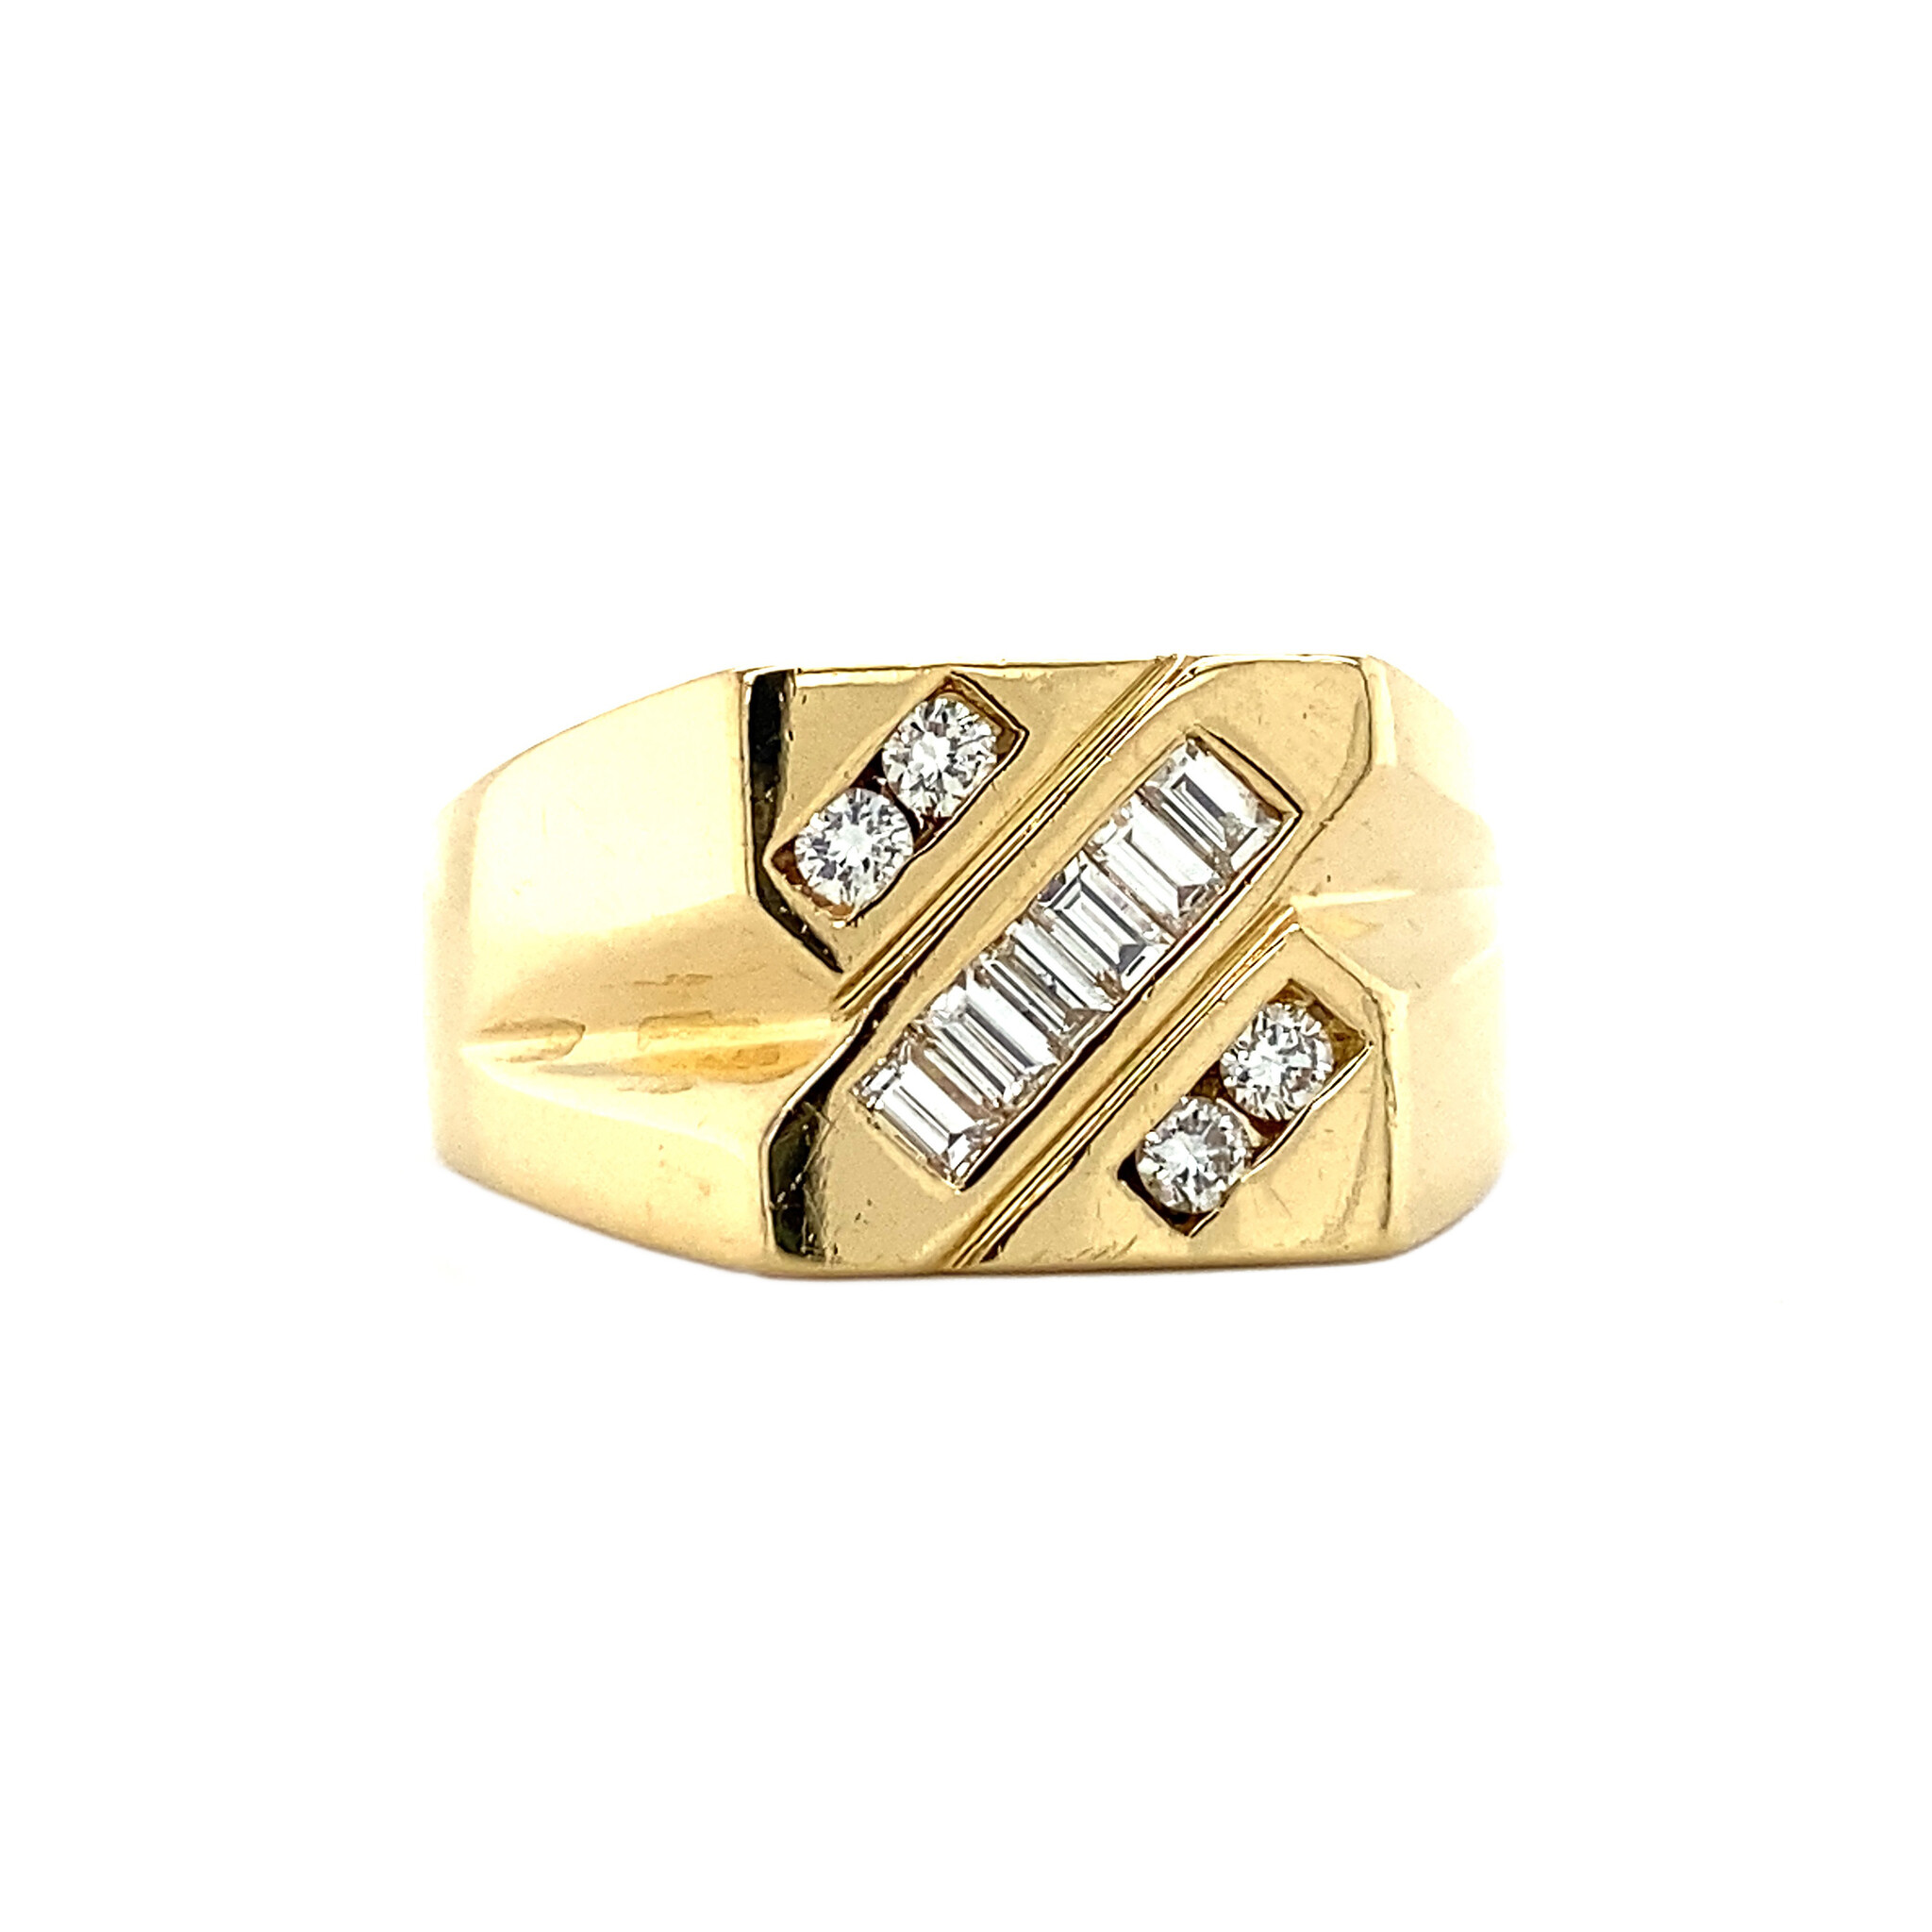 Rimpels Een goede vriend Spreekwoord Gouden heren ring met diamant 18 krt | Gegarandeerd de laagste prijs!